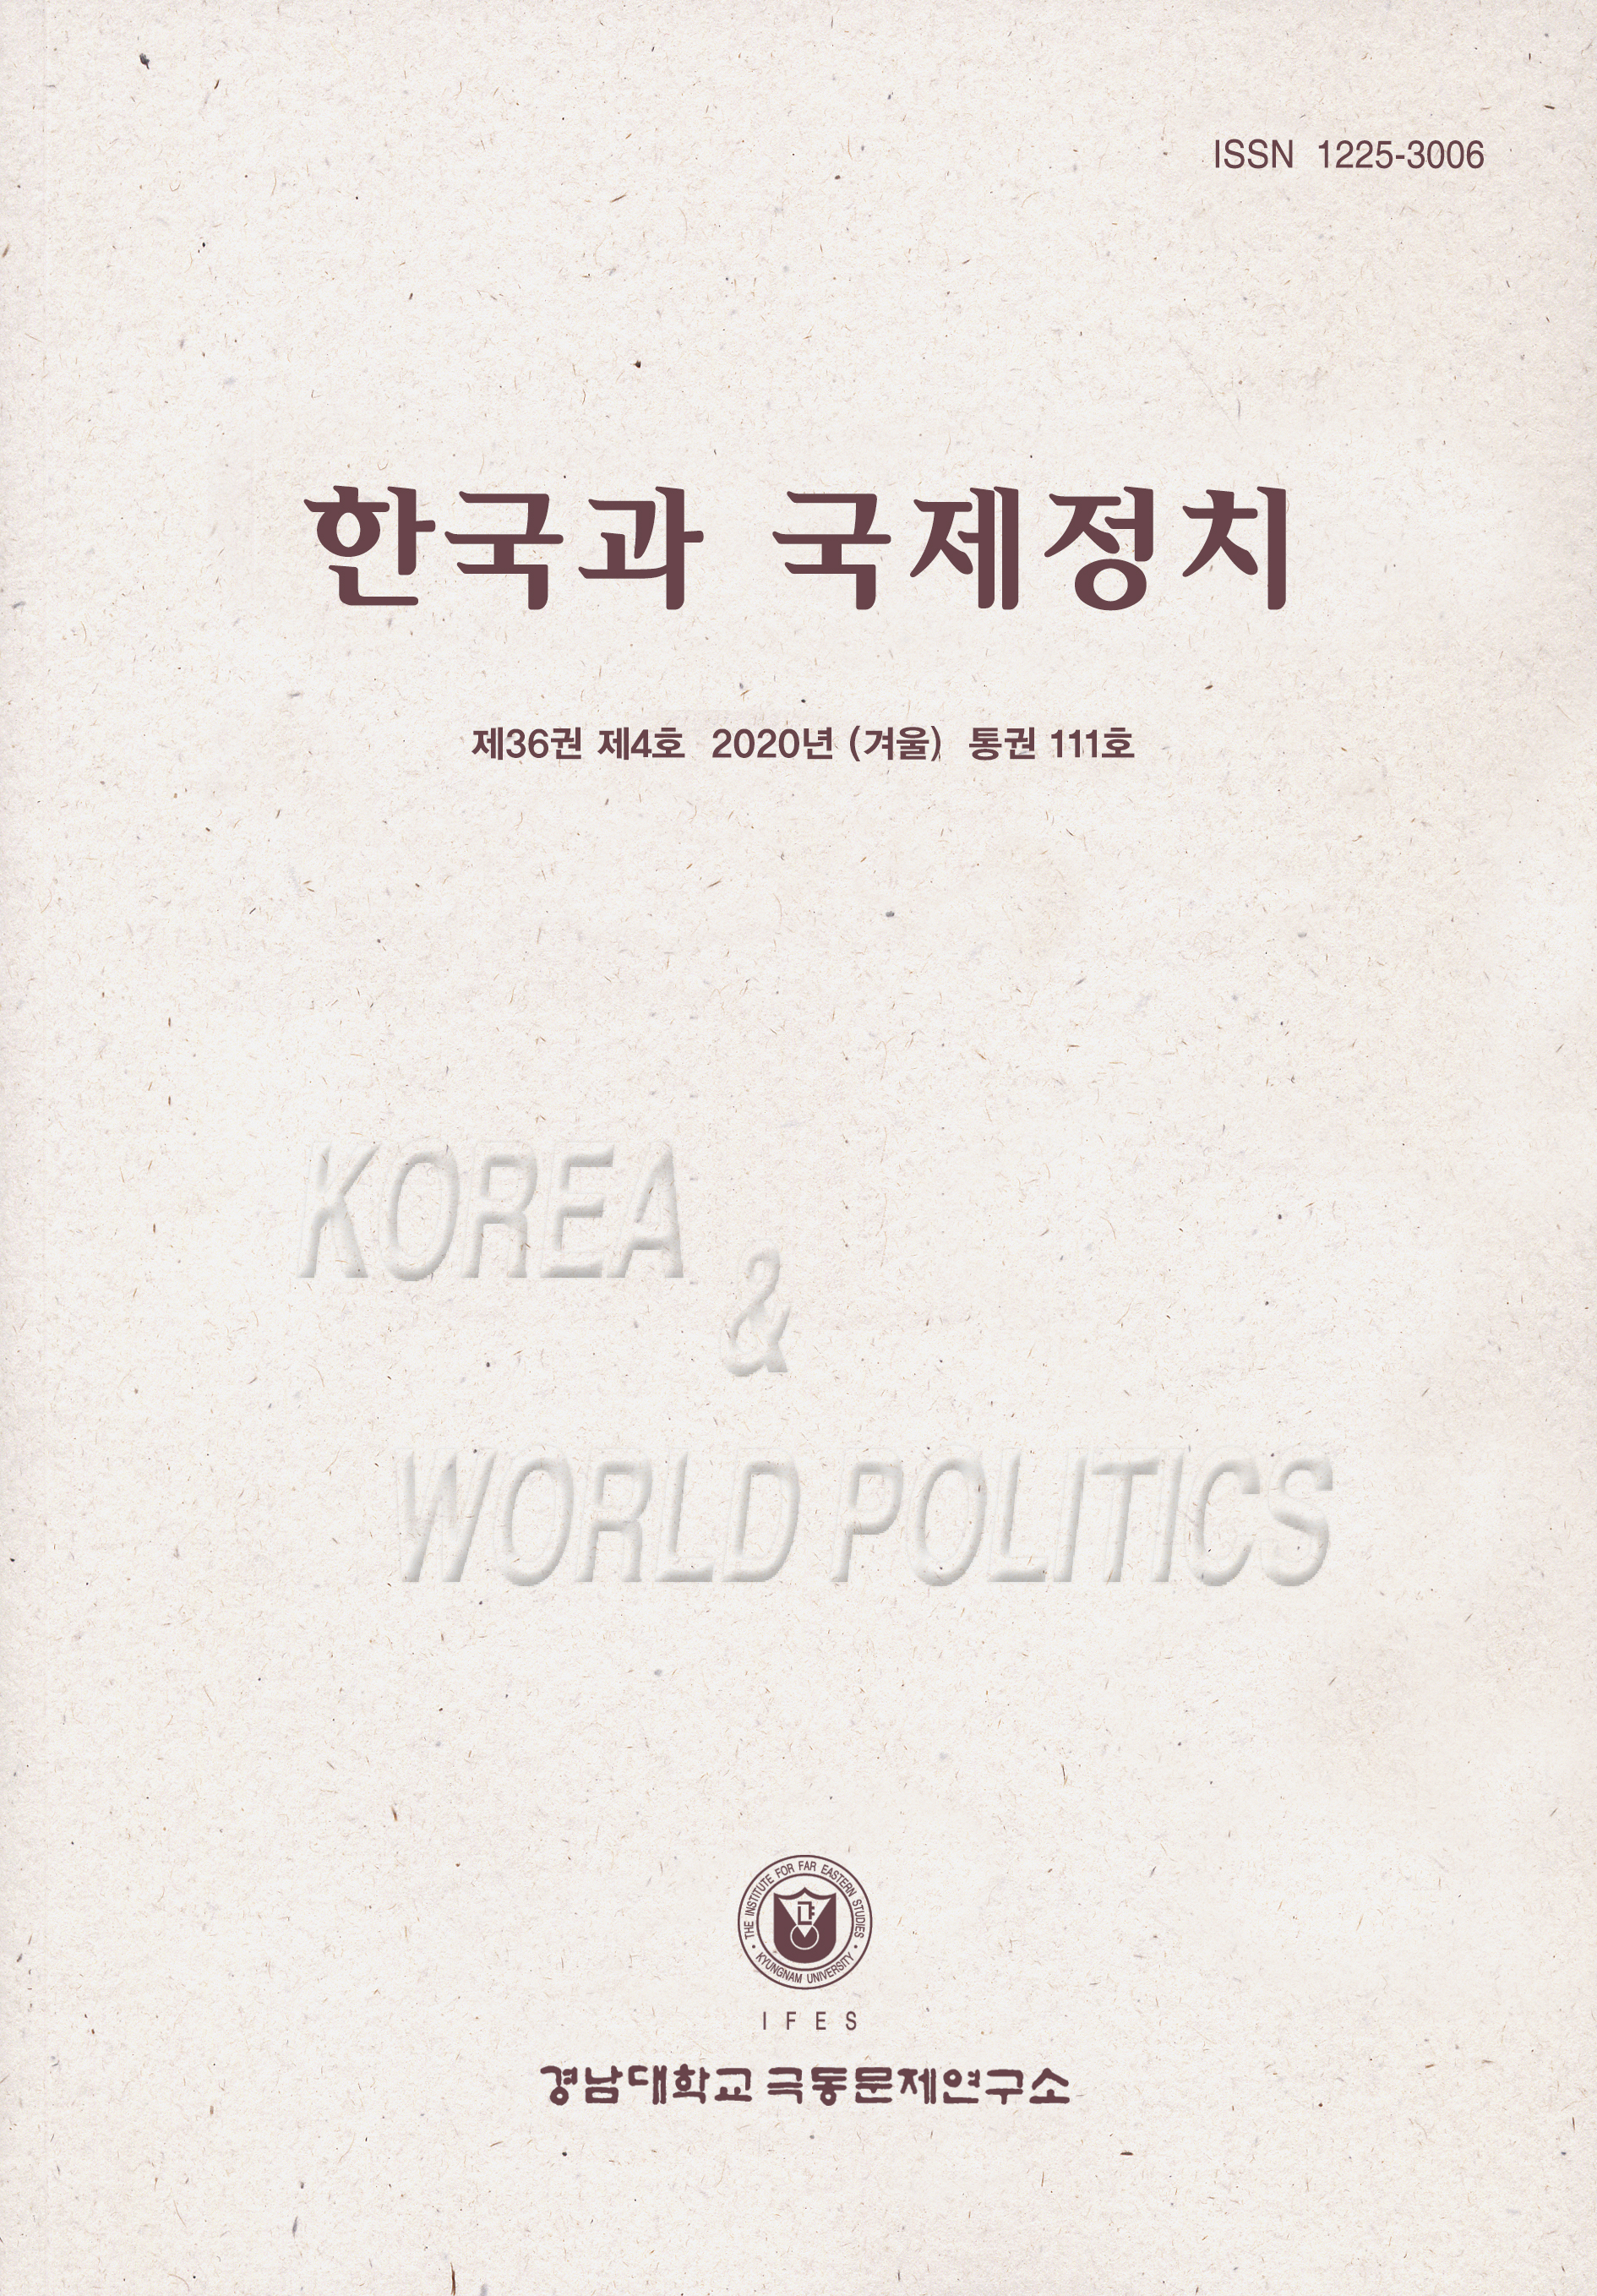 Korea and World Politics, Vol.36, No.4